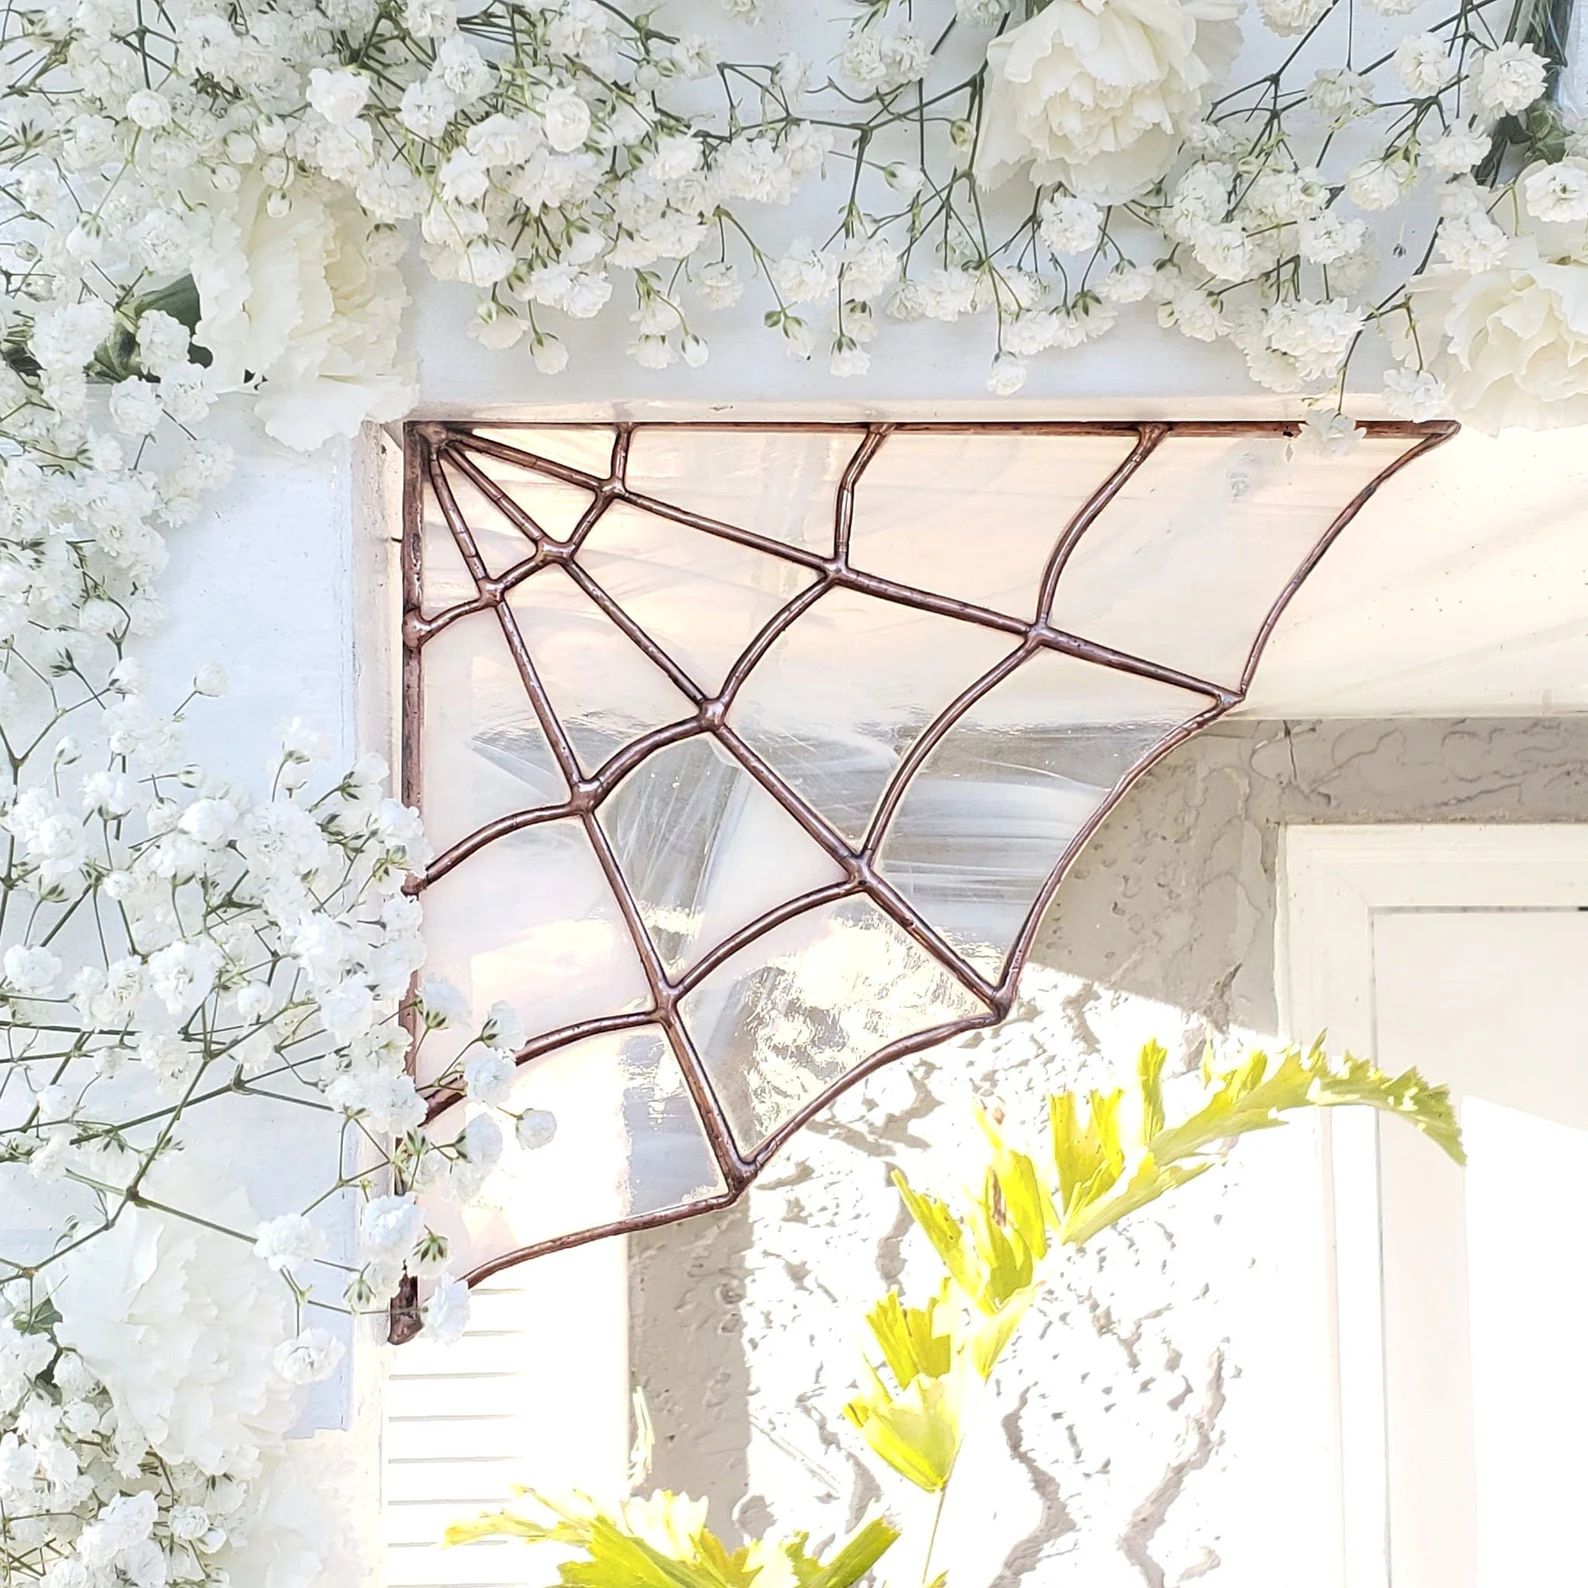 The White Wispy Whimsy Effervescent Spider Web gothic decor | Etsy | Etsy (US)